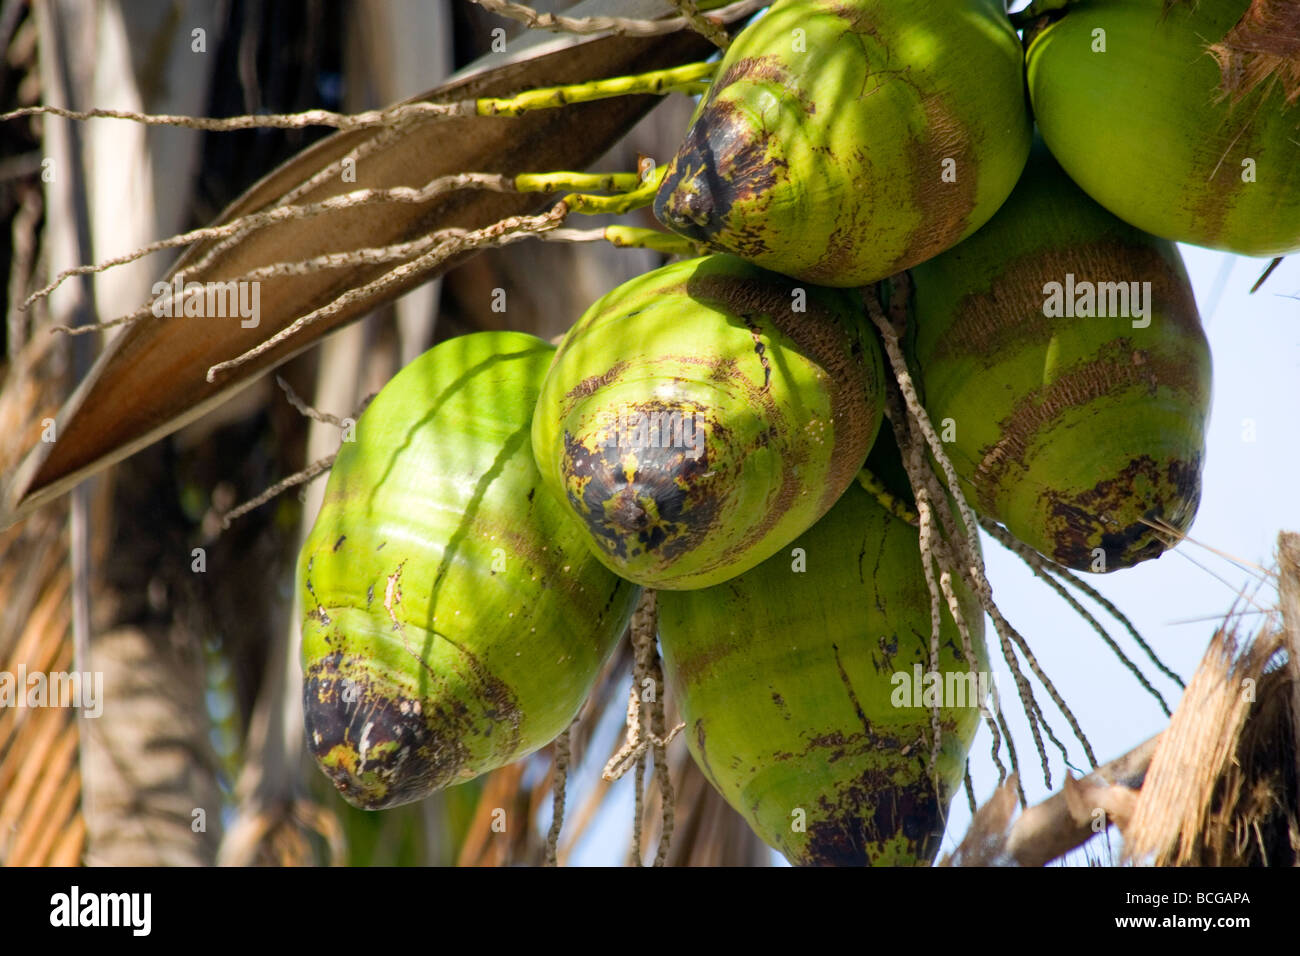 The Coconut Palm (Cocos nucifera). Stock Photo